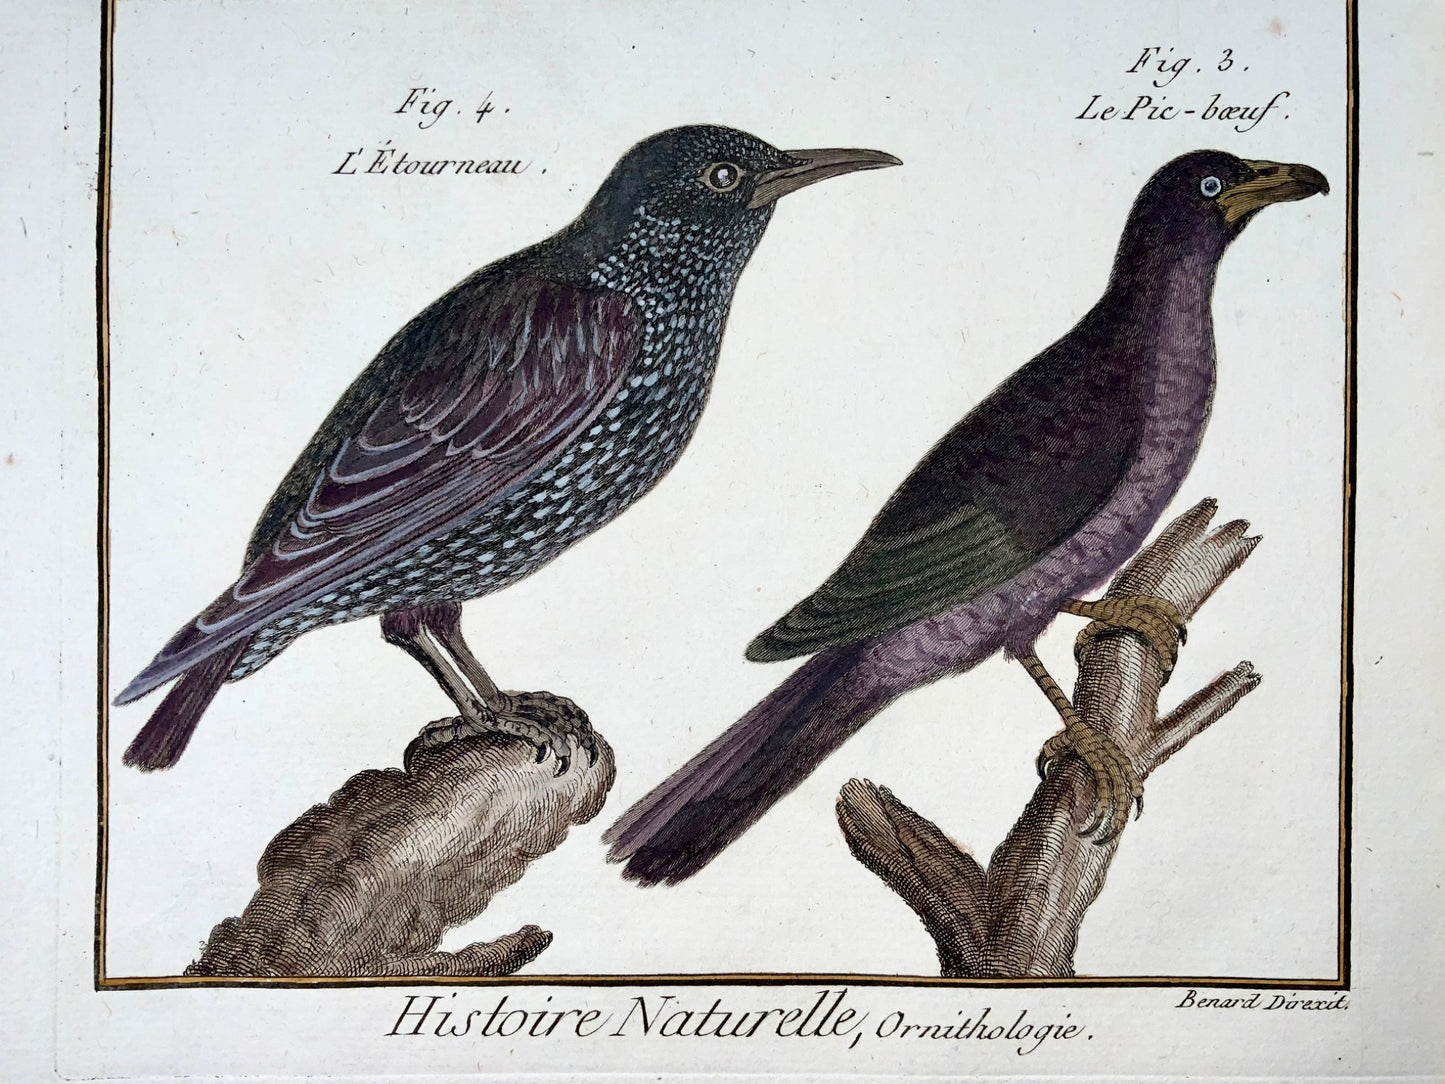 1789 Storno, Picchio muratore, Benard sc. quarto, colore a mano, incisione, ornitologia